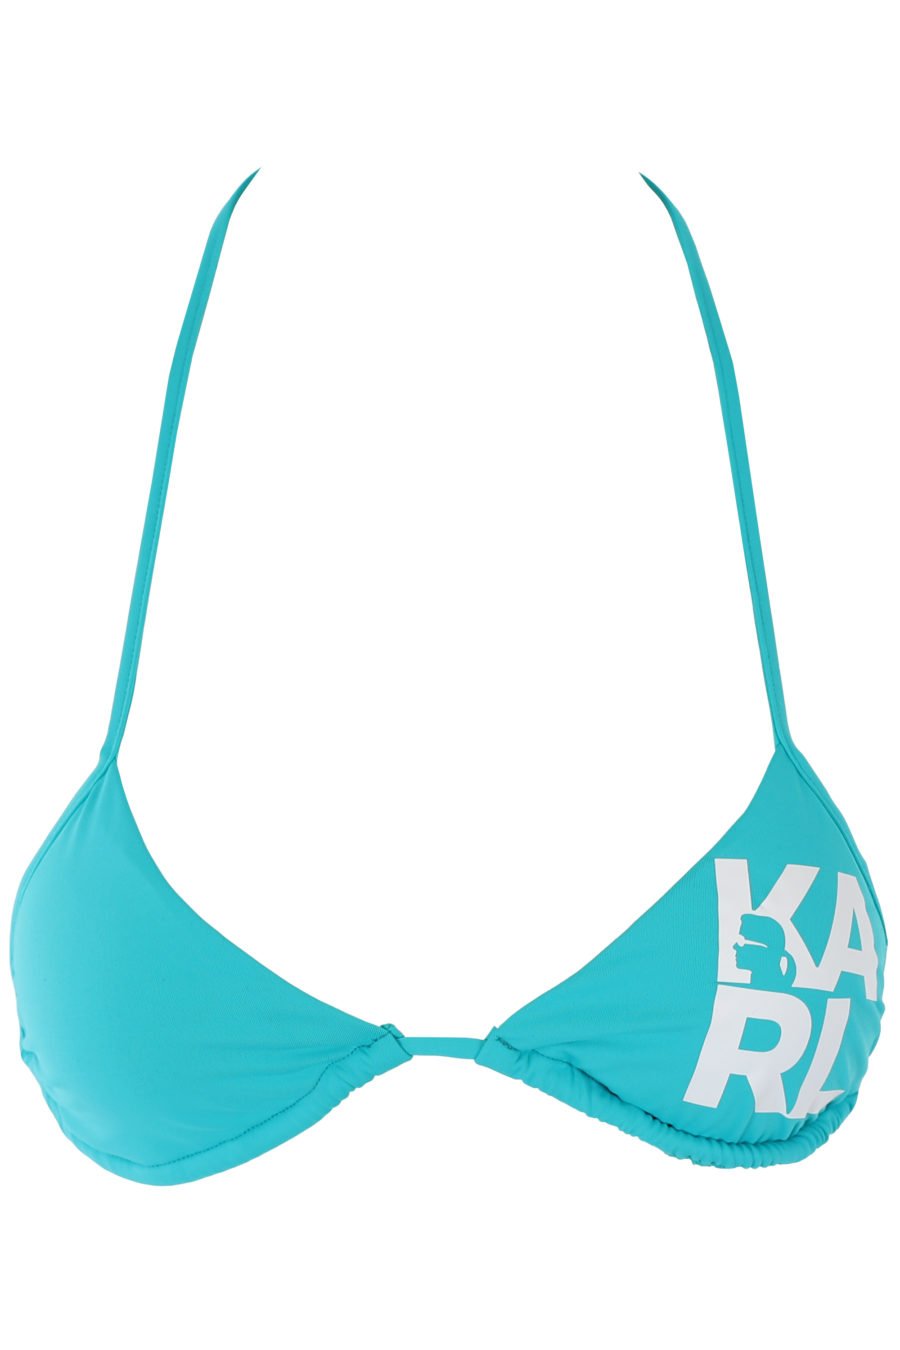 Top de bikini azul turquesa con logo blanco - IMG 1196